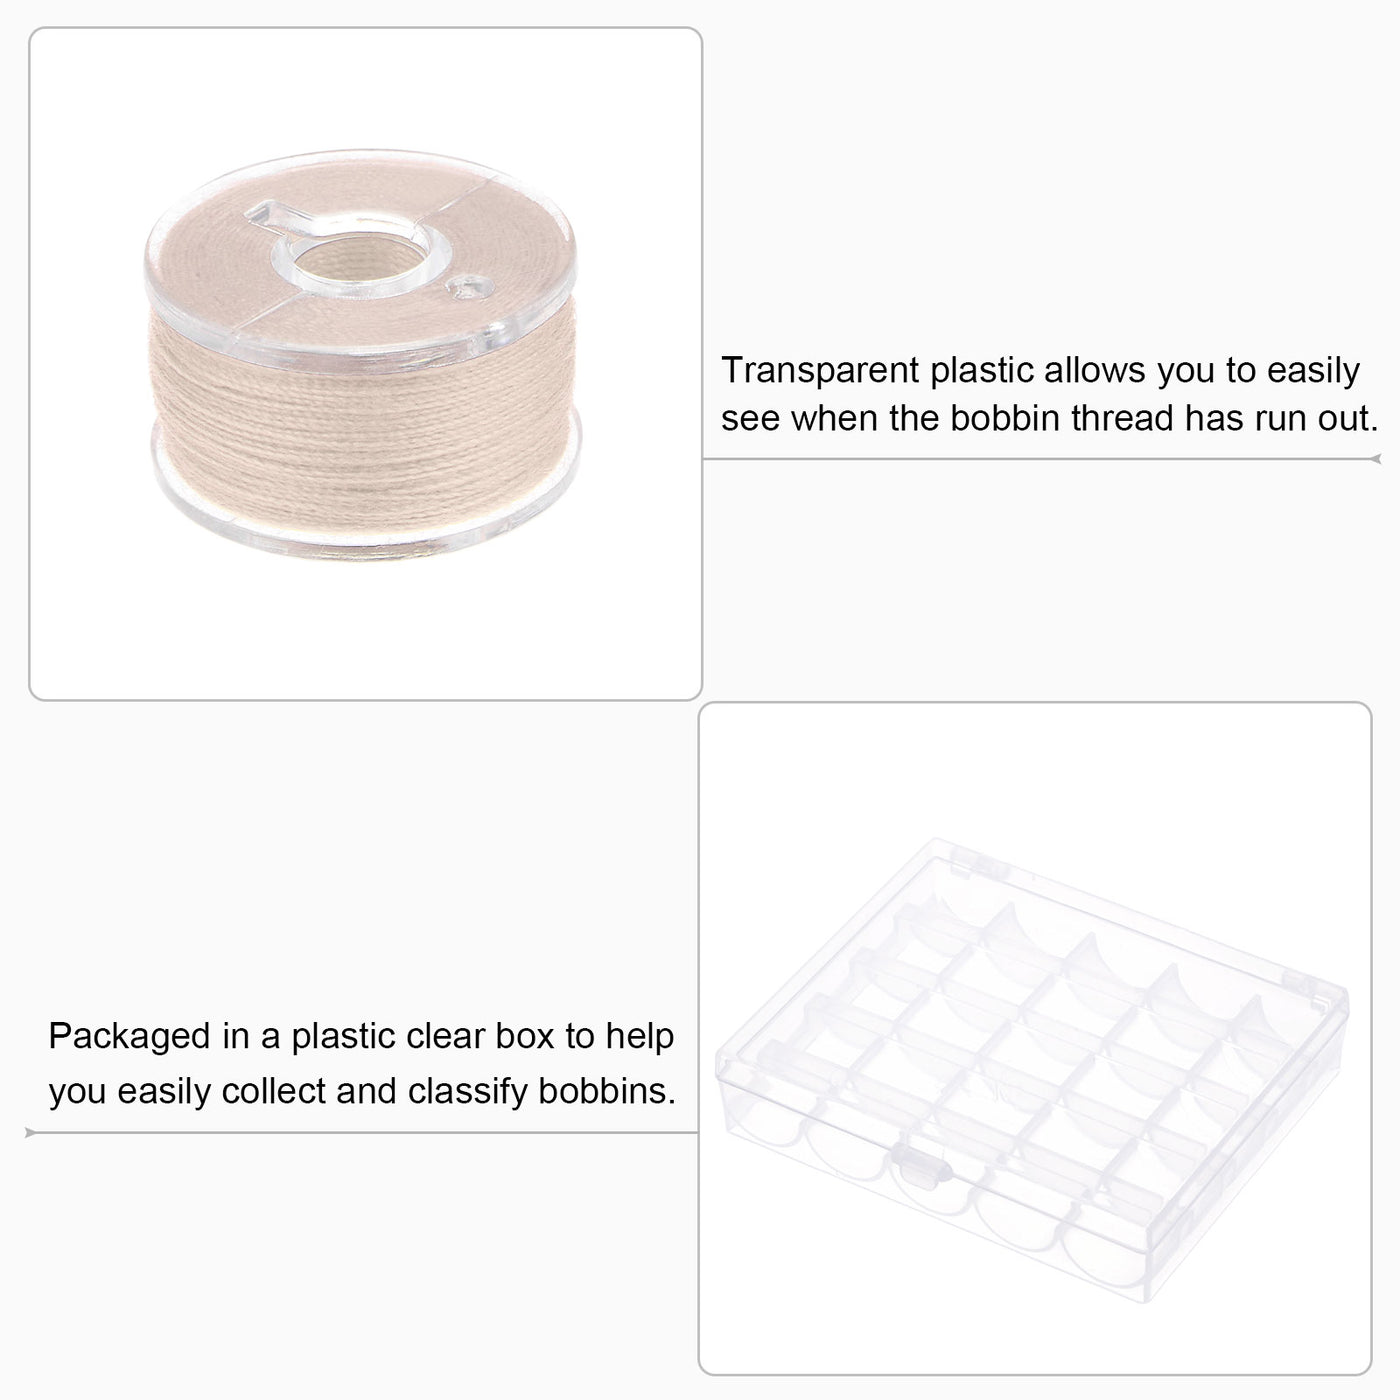 Harfington Prewound Sewing Bobbin Thread Set of 25pcs with Storage Plastic Case, Dark Beige